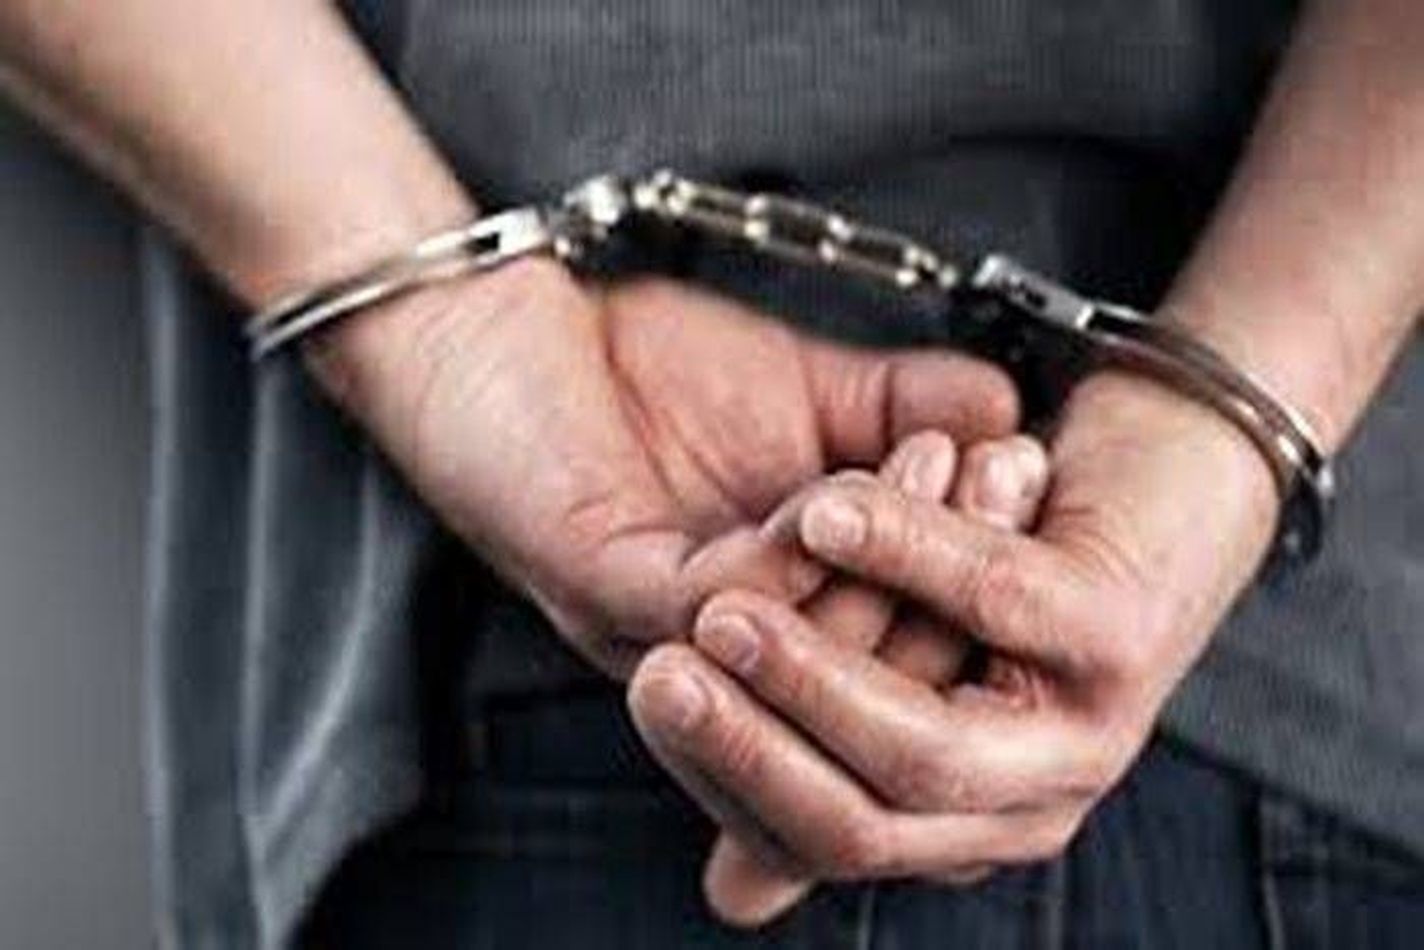 कांगे्रस पदाधिकारी पर हमले के मामले में पांचवां आरोपी गिरफ्तार